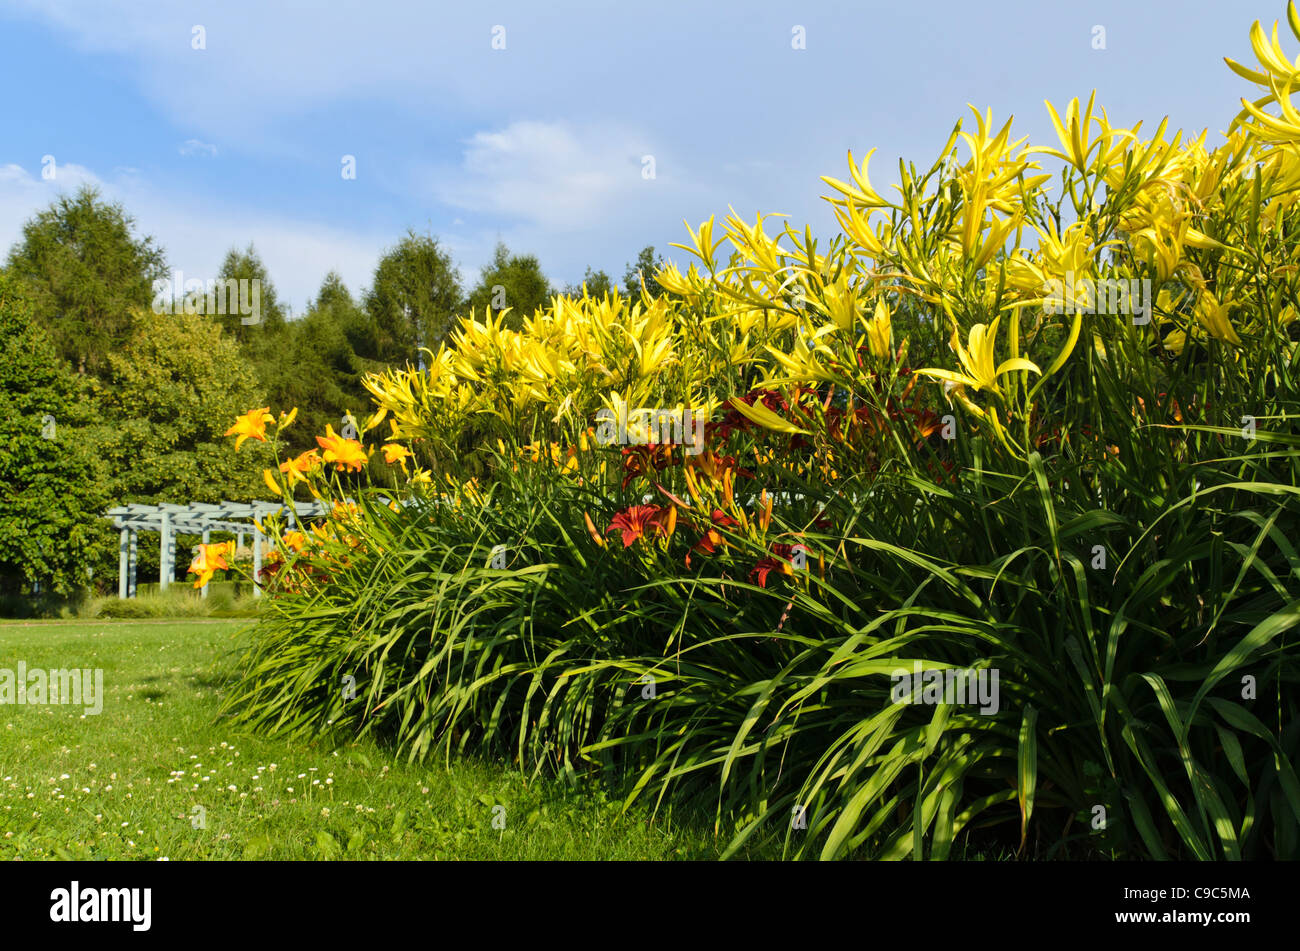 Day lilies (Hemerocallis) Stock Photo